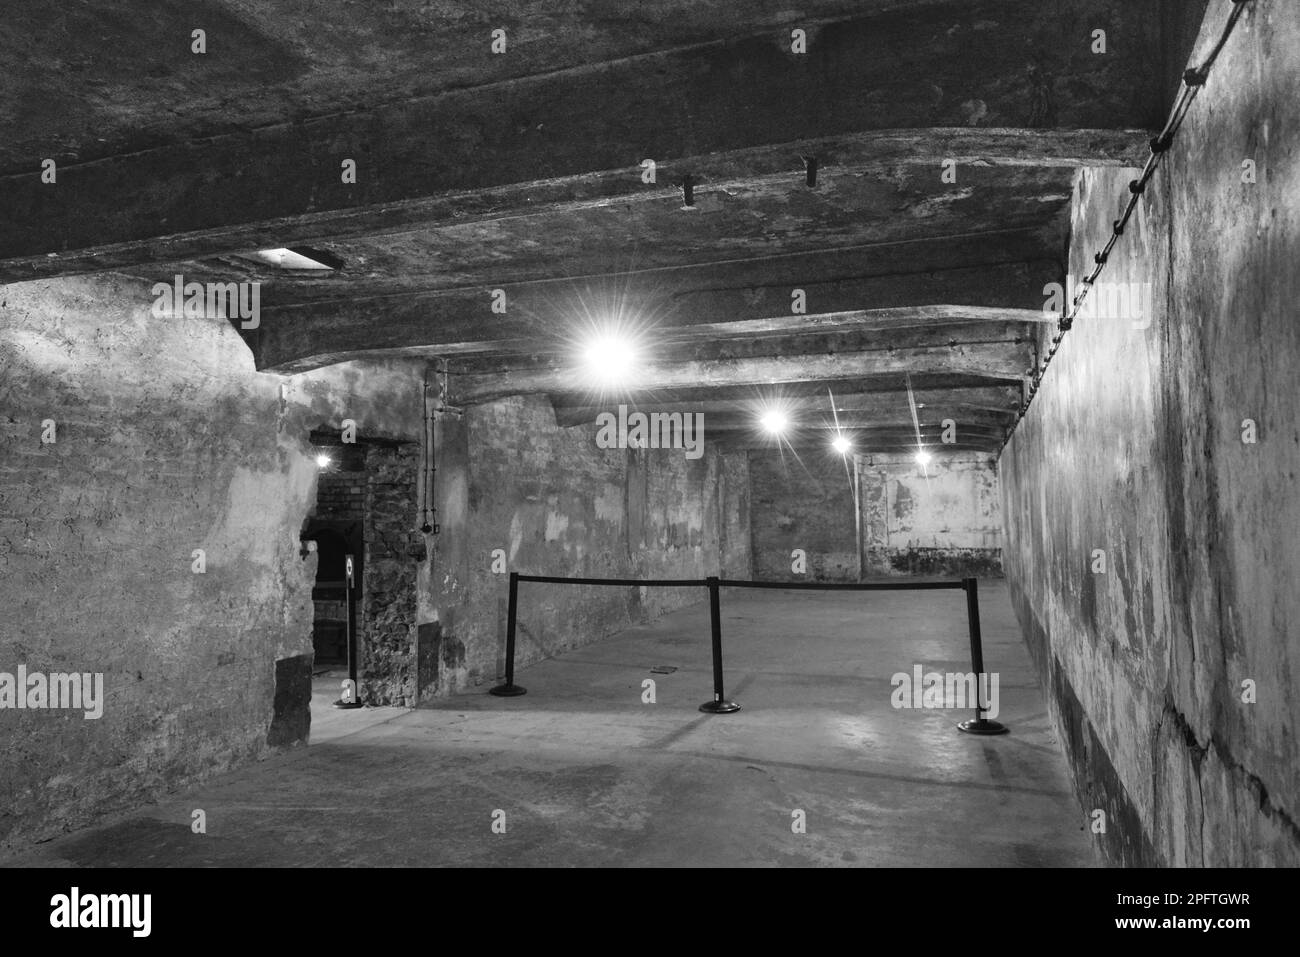 Gas chamber, Stammlager I, Concentration camp, Auschwitz-Birkenau, Auschwitz, Poland Stock Photo